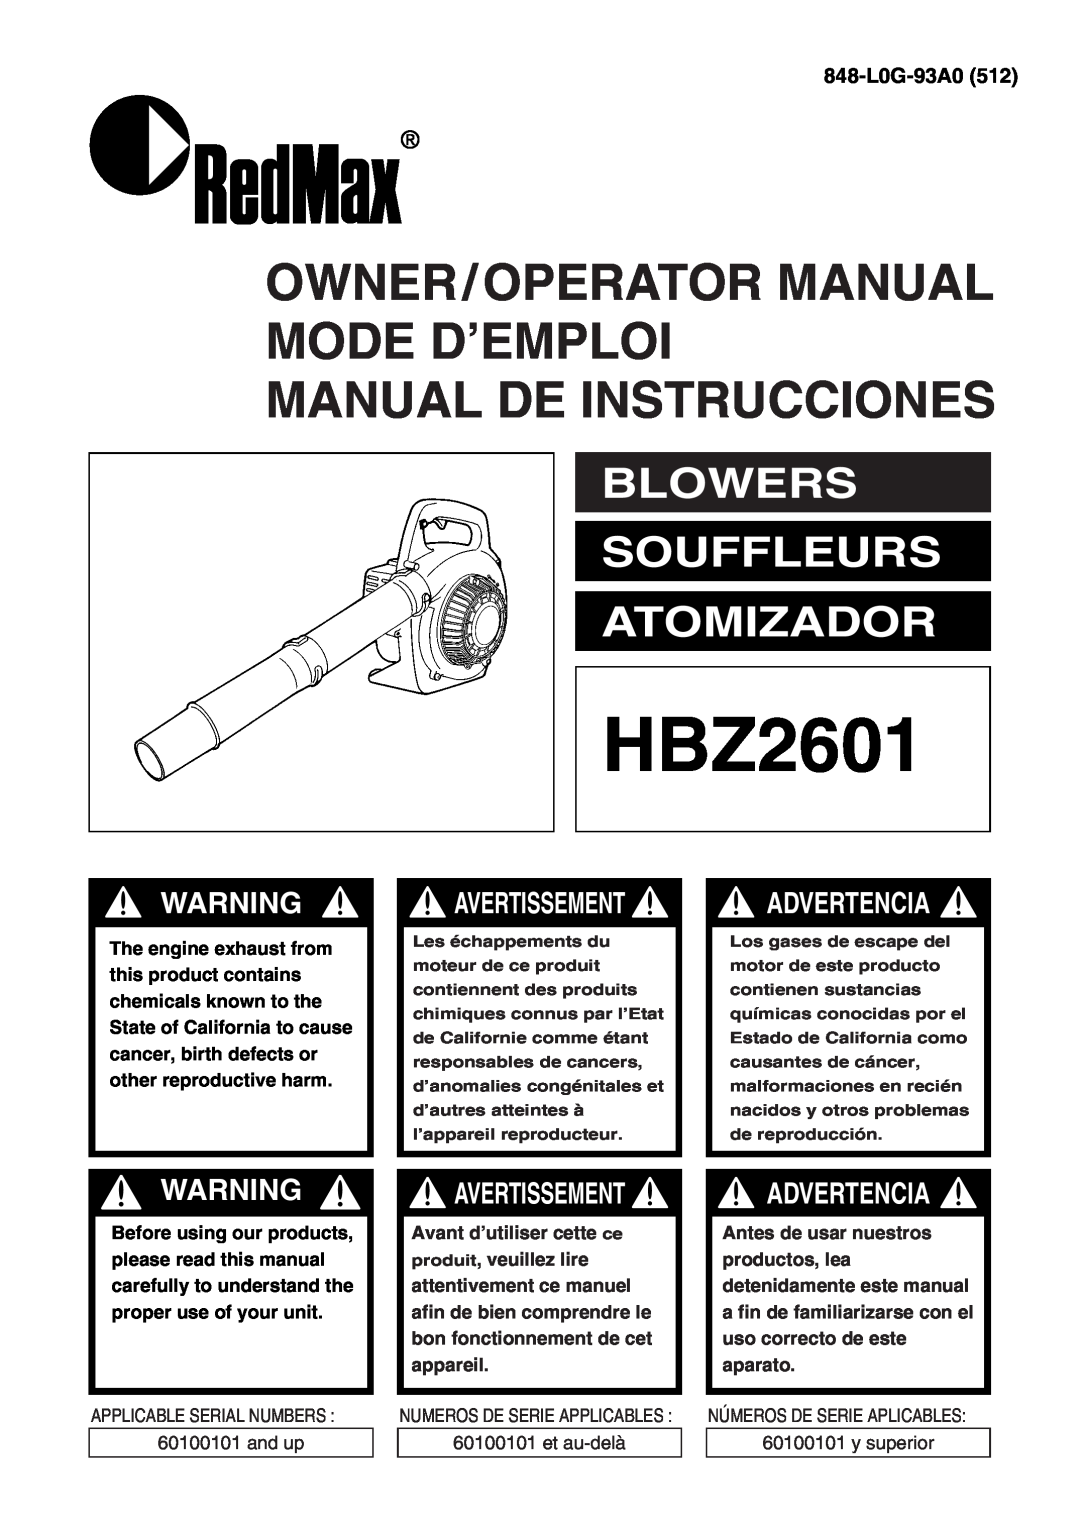 RedMax HBZ2601 manual Owner/Operator Manual Mode D’Emploi, Manual De Instrucciones, Blowers Souffleurs Atomizador 